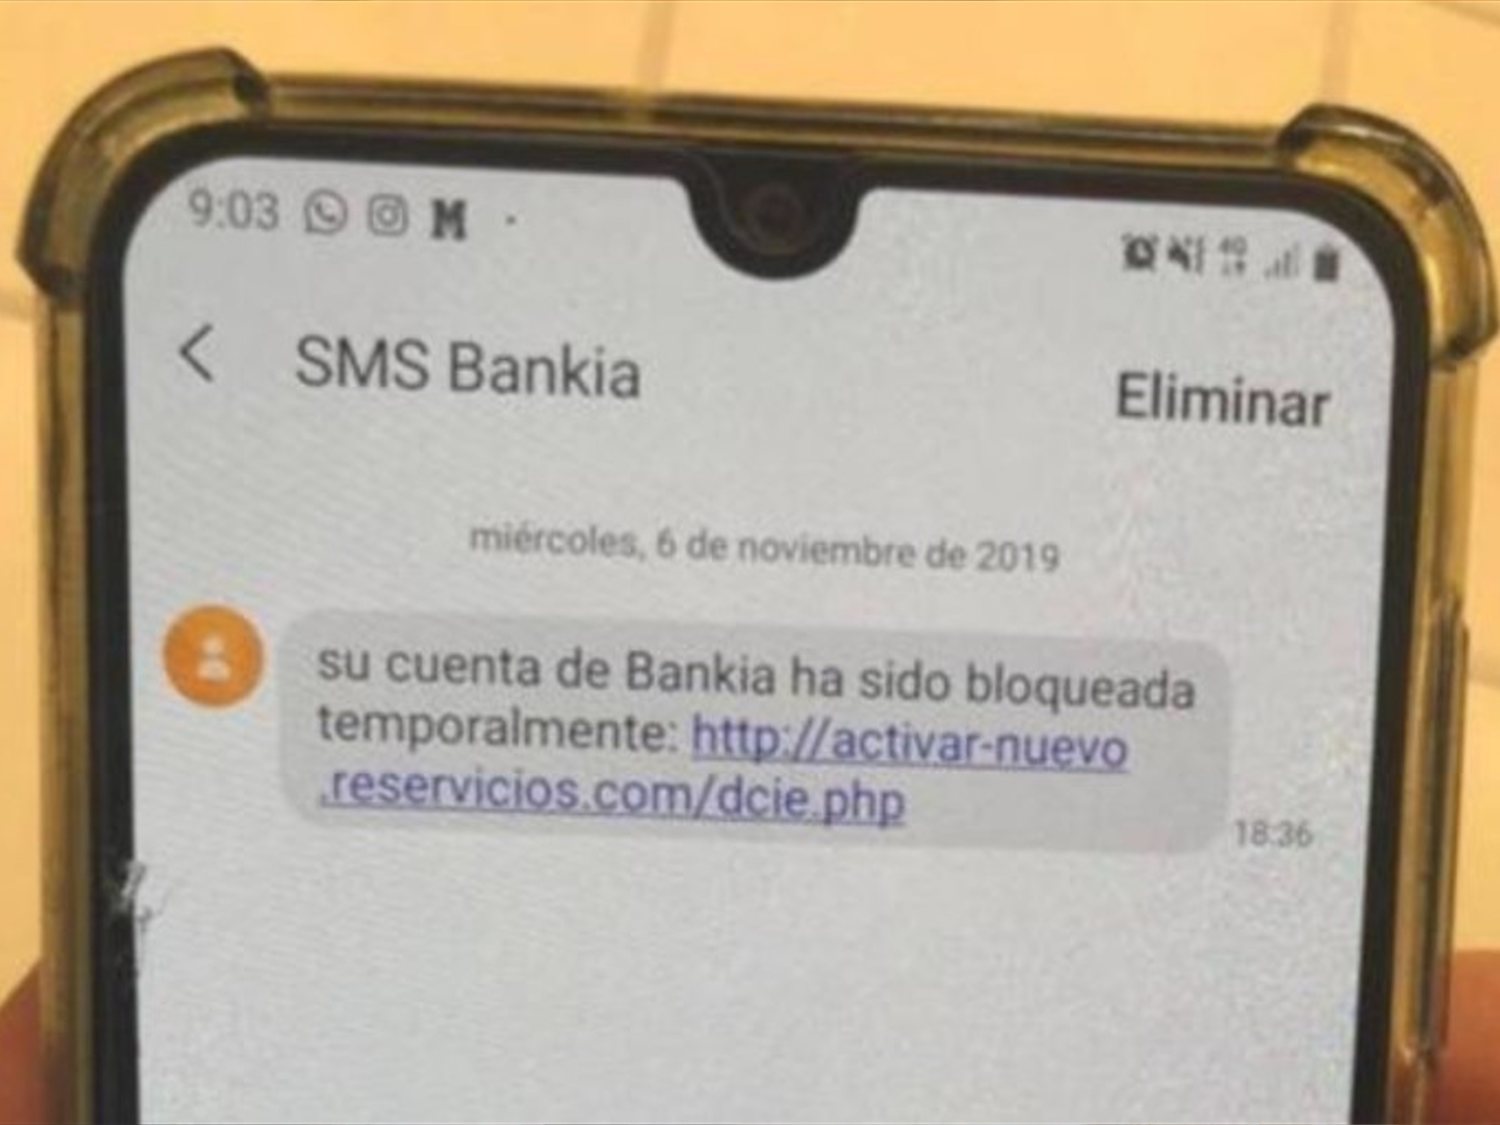 No abras este SMS de Bankia: se trata de una estafa que vacía las cuentas y roba tus datos